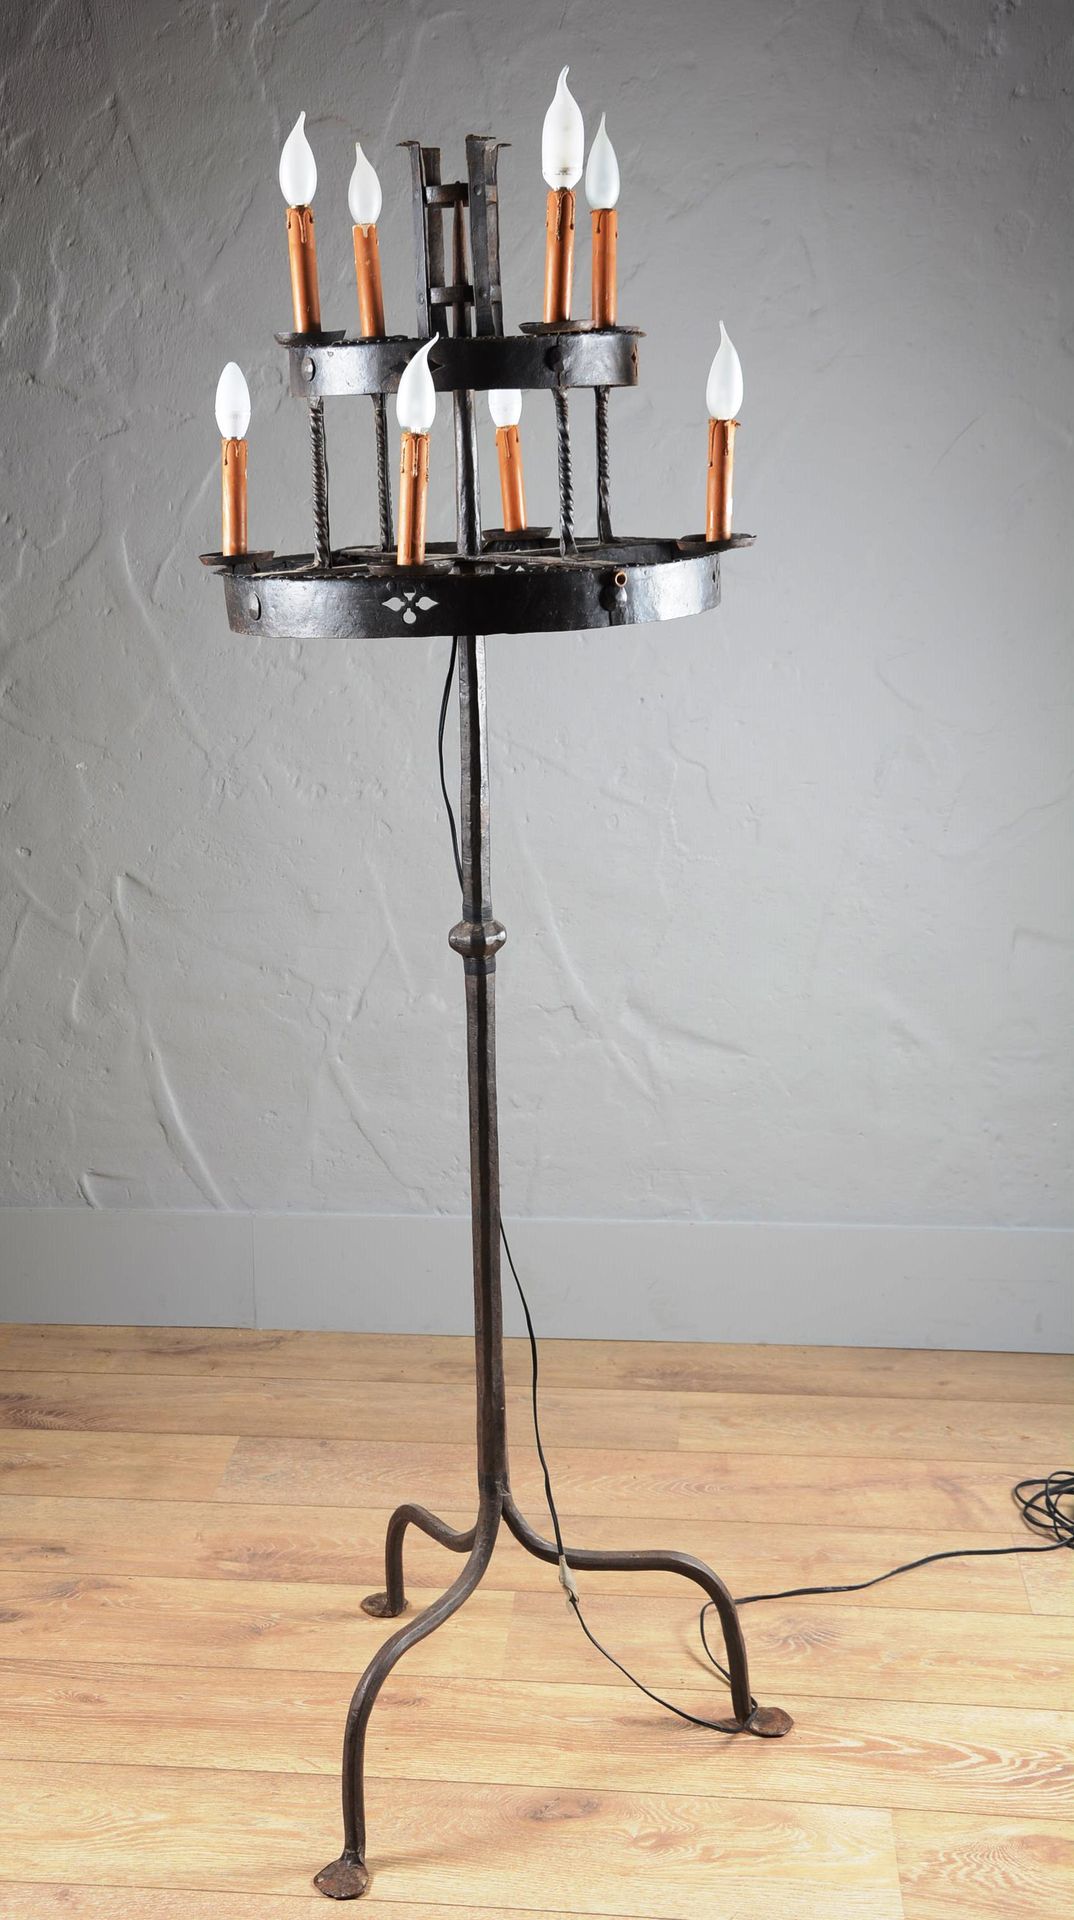 Haut candélabre en fer forgé électrifié. 高大的锻铁电气化烛台。

有两排蜡烛。

身高：173厘米。